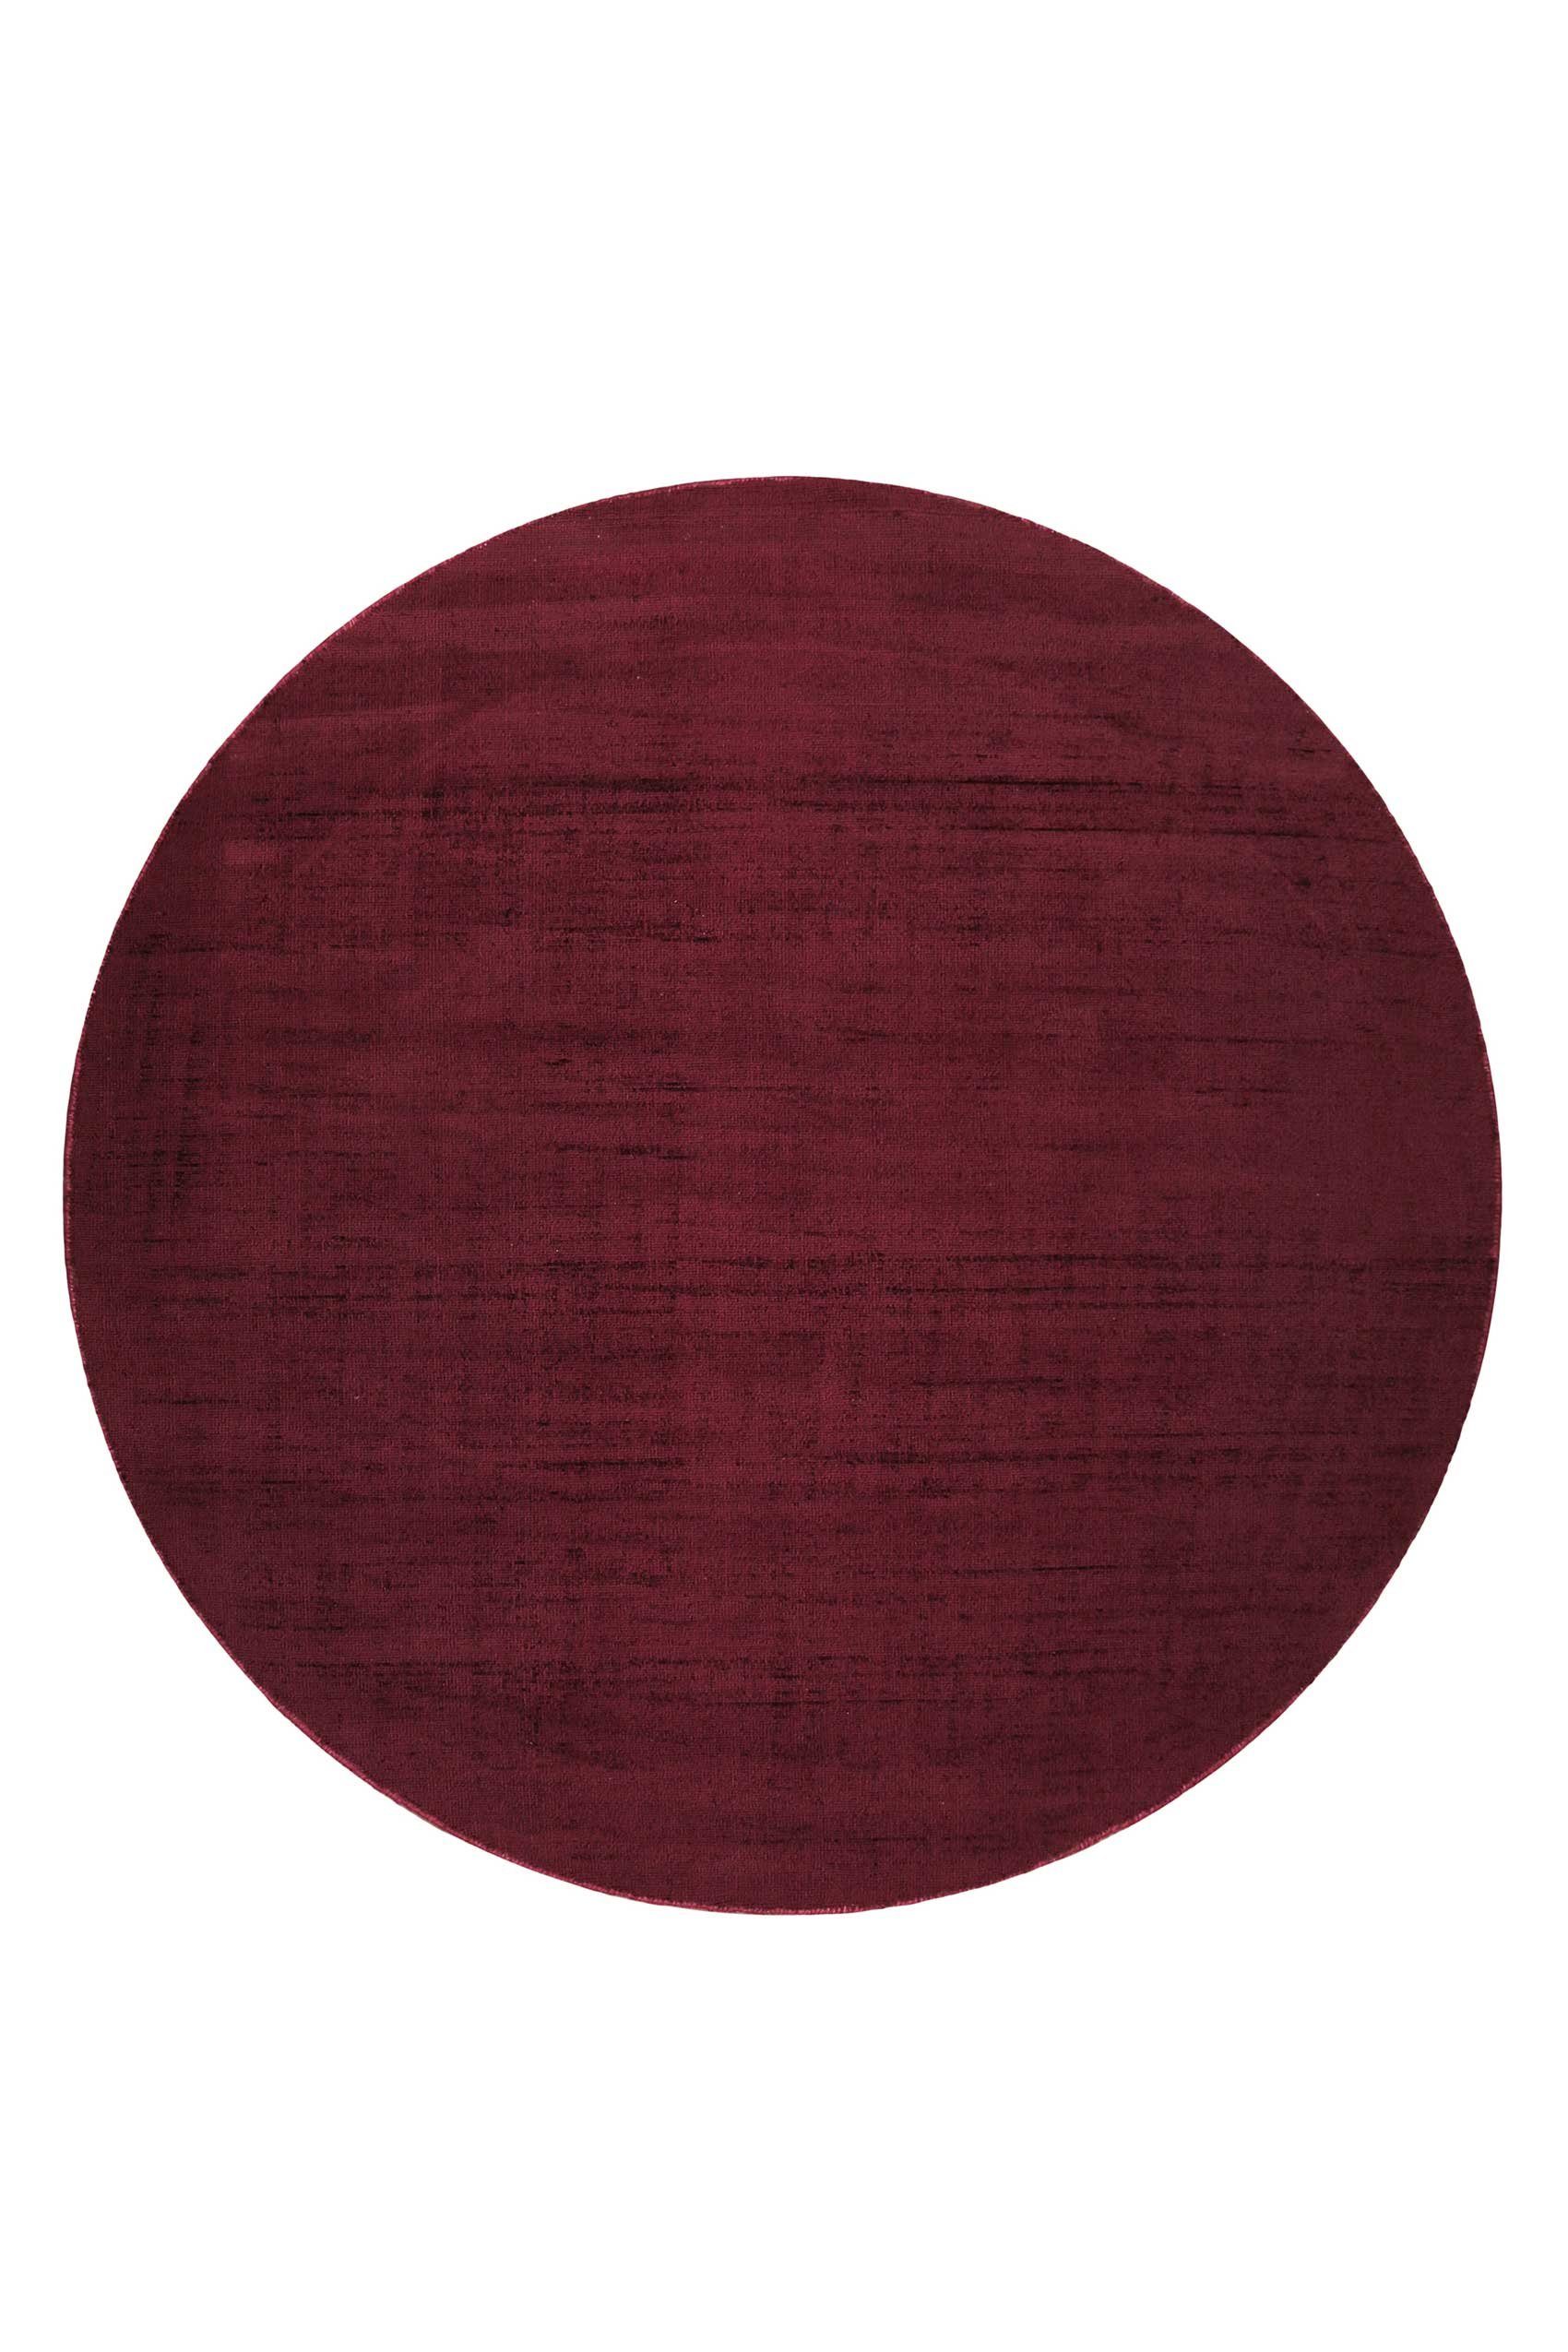 Teppich Gil, handgewebt, rund, glänzend, Esprit, Höhe: rot schimmernde 8 seidig bordeaux mm, Farbbrillianz, Melangeeffekt